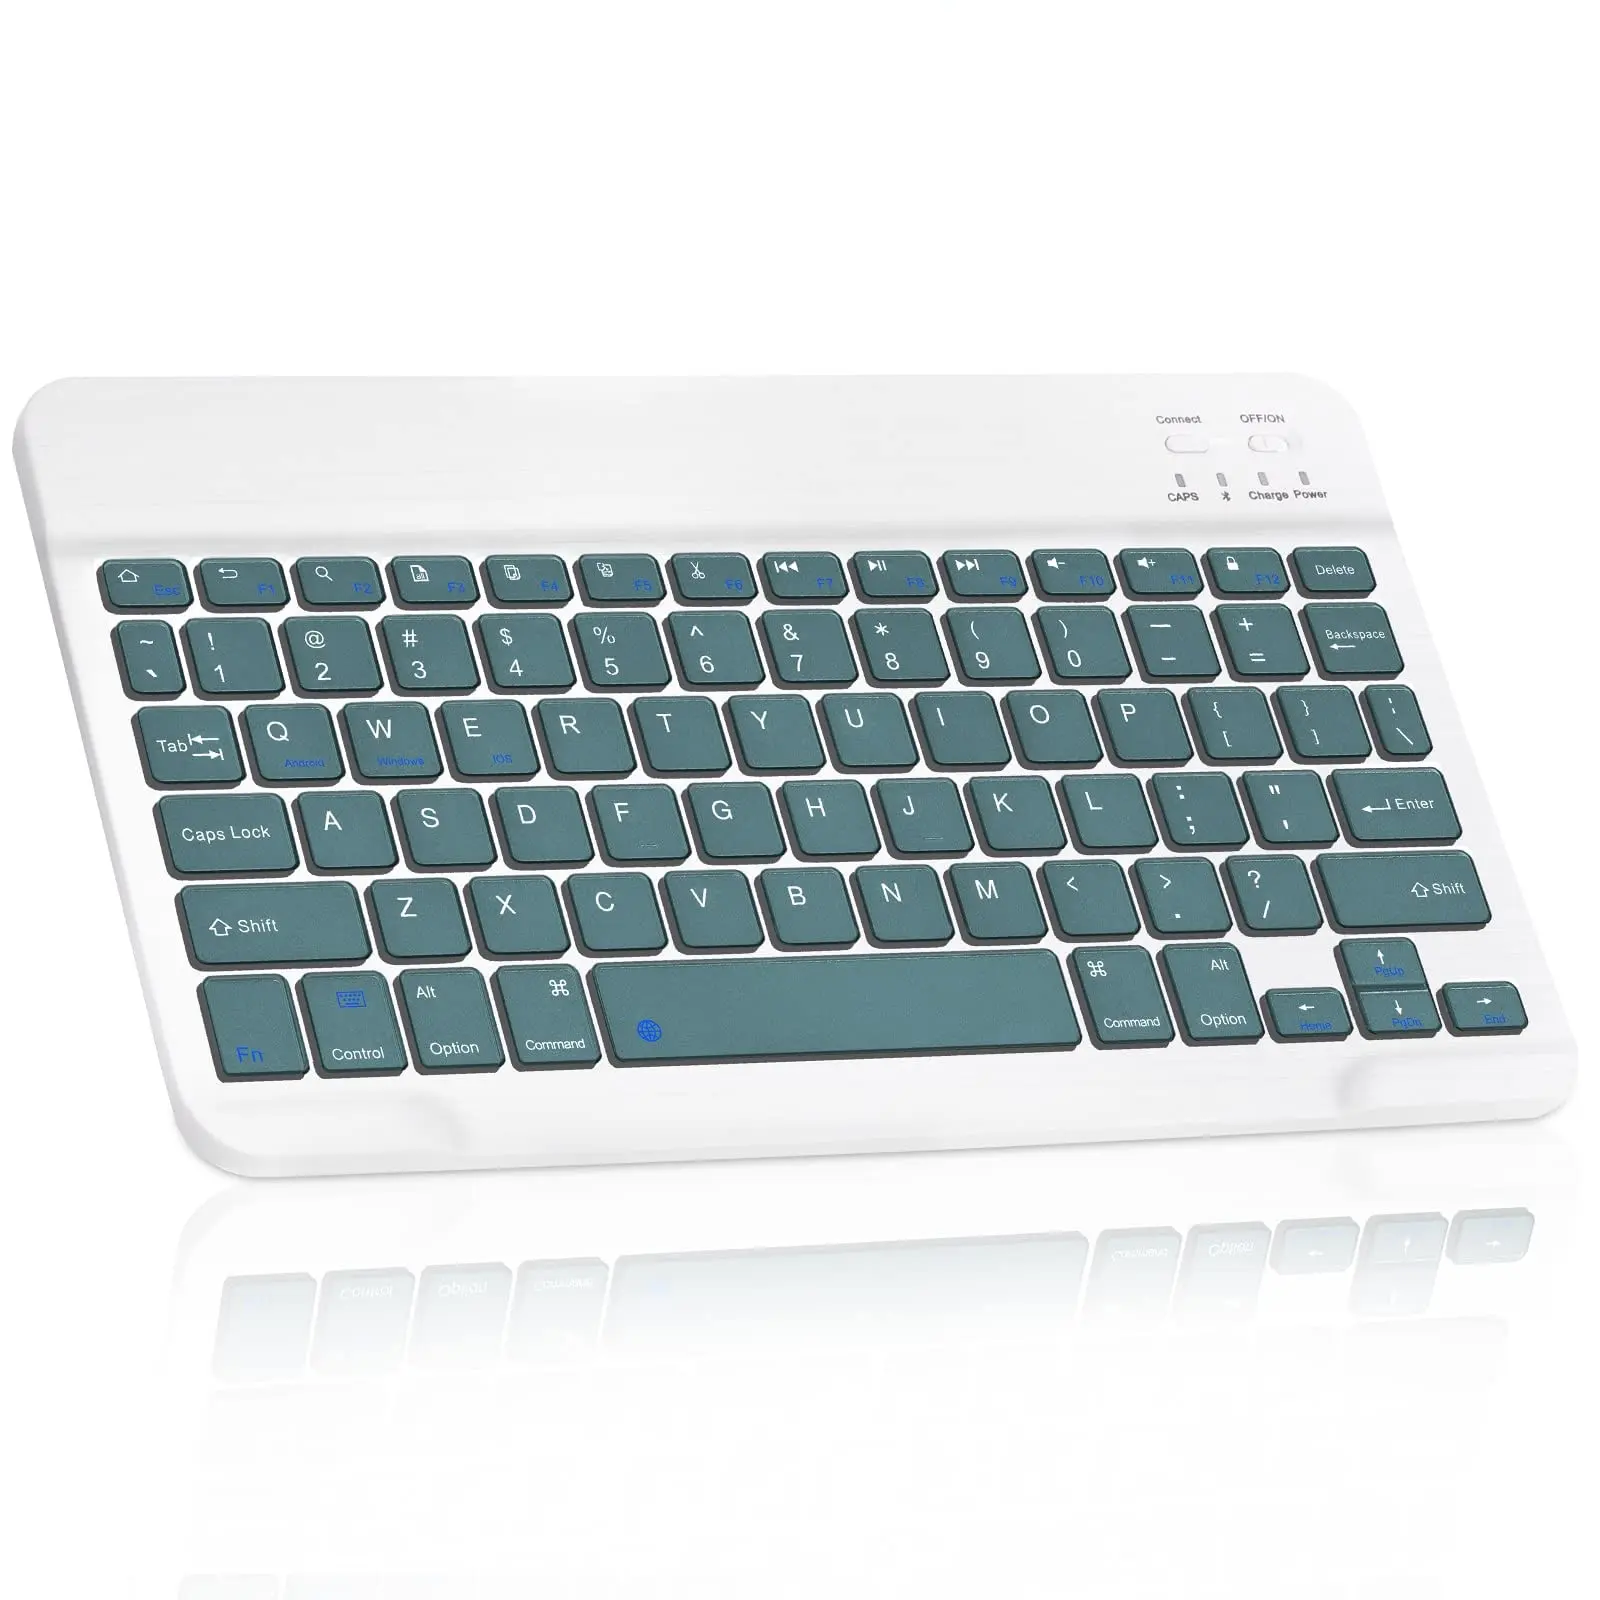 comp poner teclado inteligente en motorola g5 - Cómo puedo configurar mi teclado para que vuelva a la normalidad